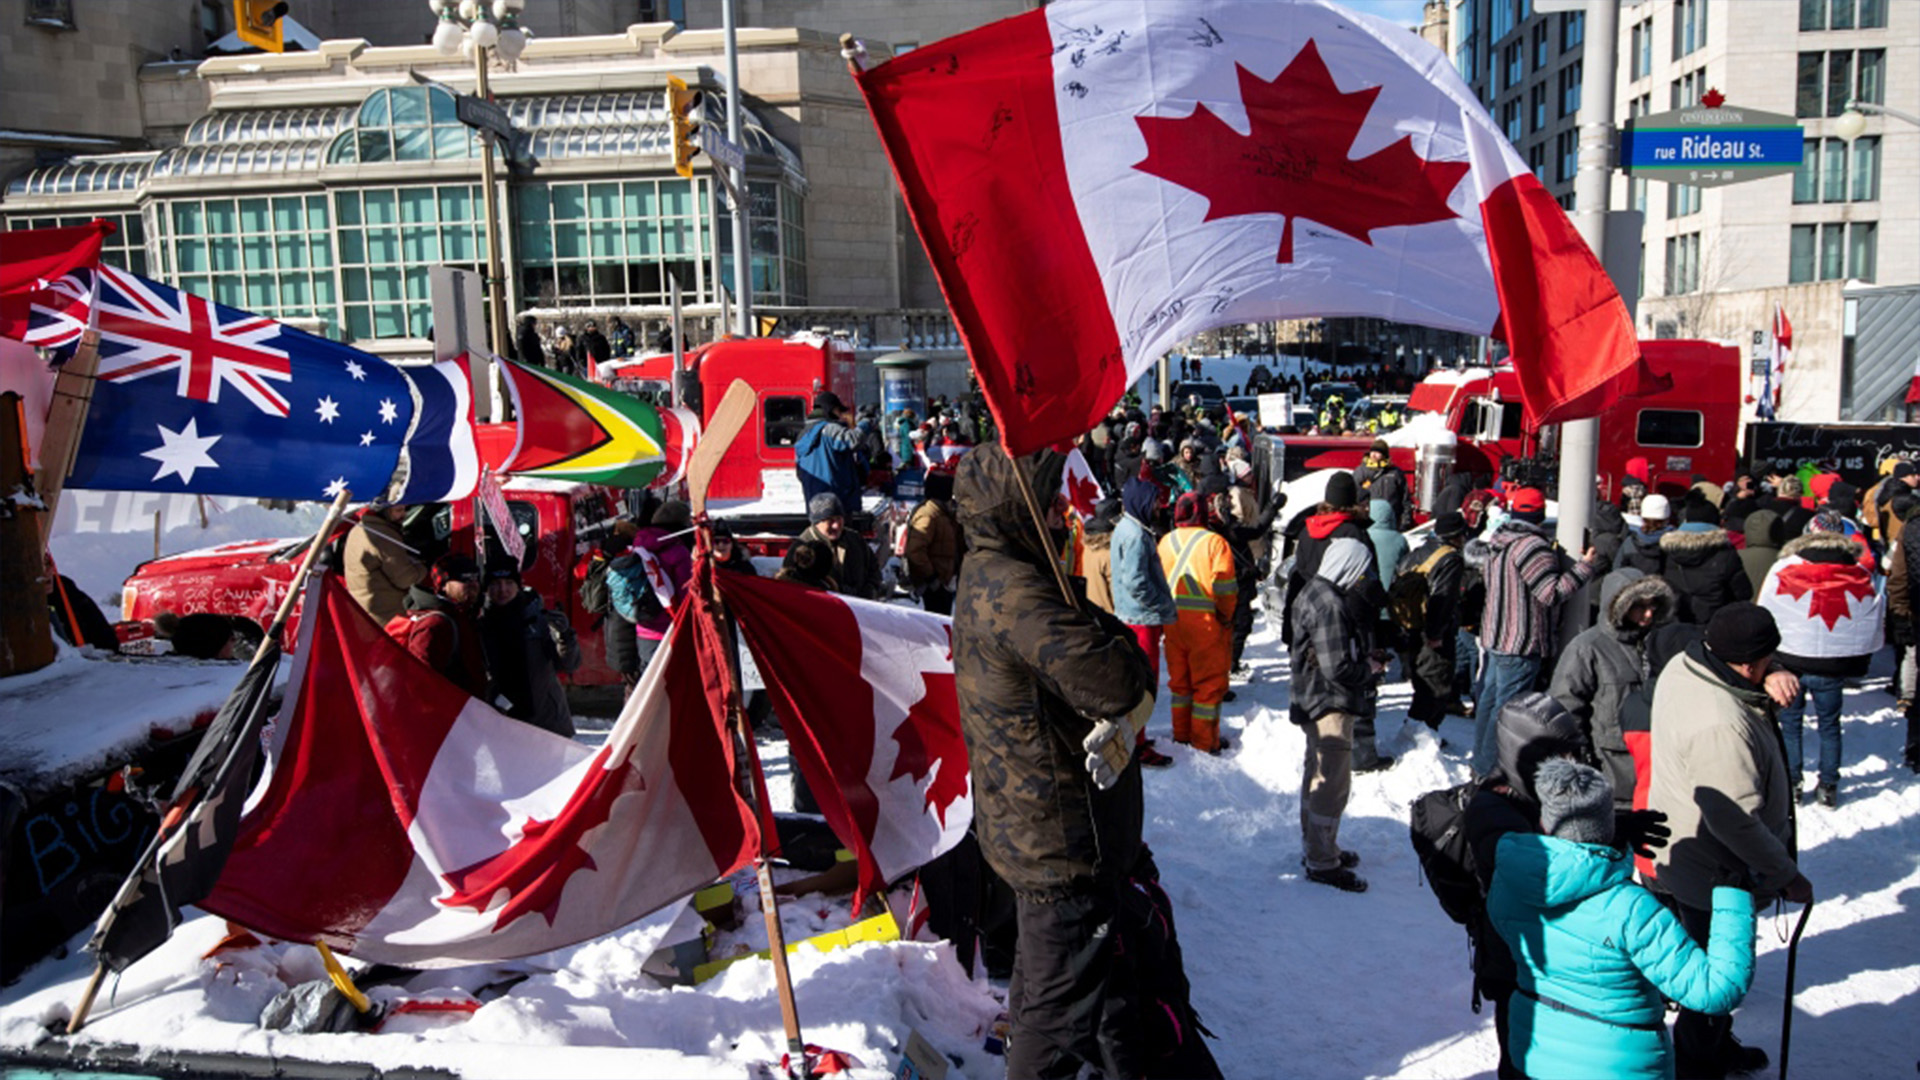 Des manifestants sur la rue Rideau à Ottawa, le vendredi 18 février 2022.